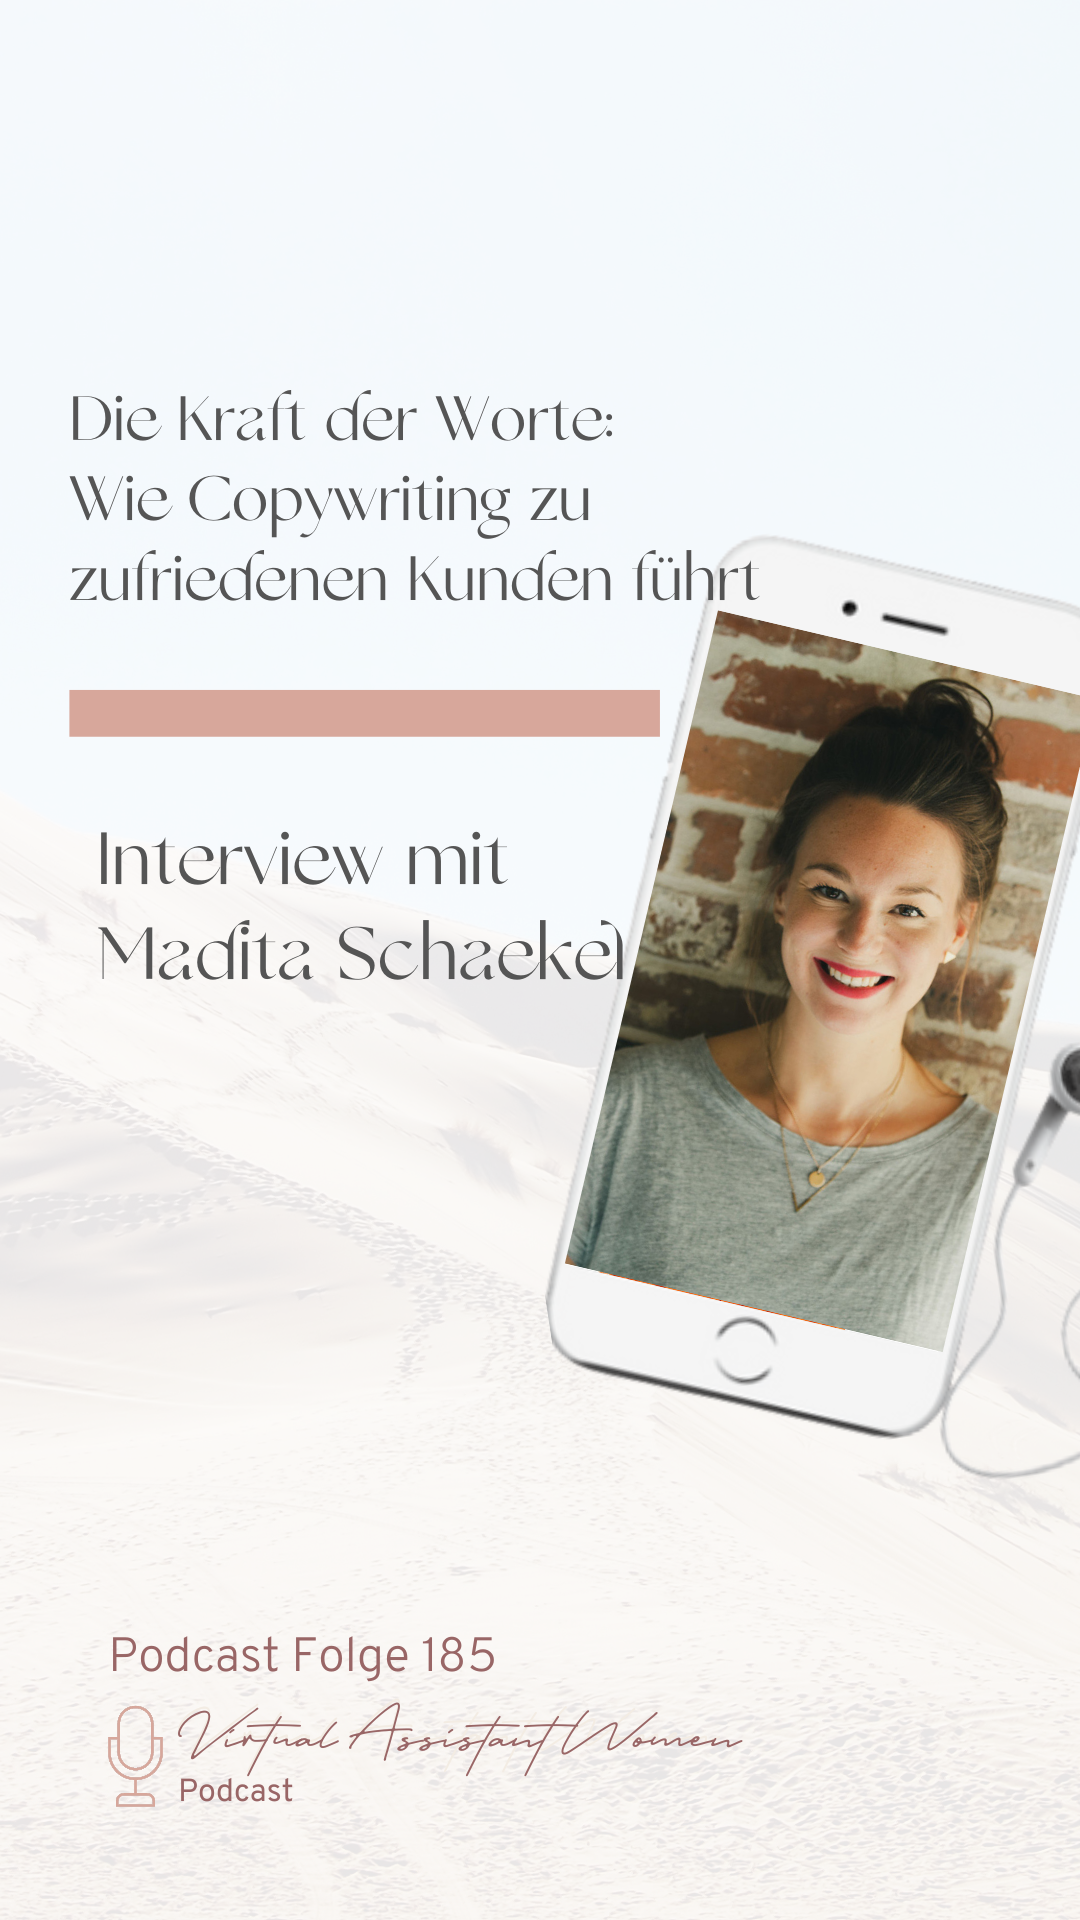 Madita Schaekel mit Copywriting zu zufriedenen Kunden